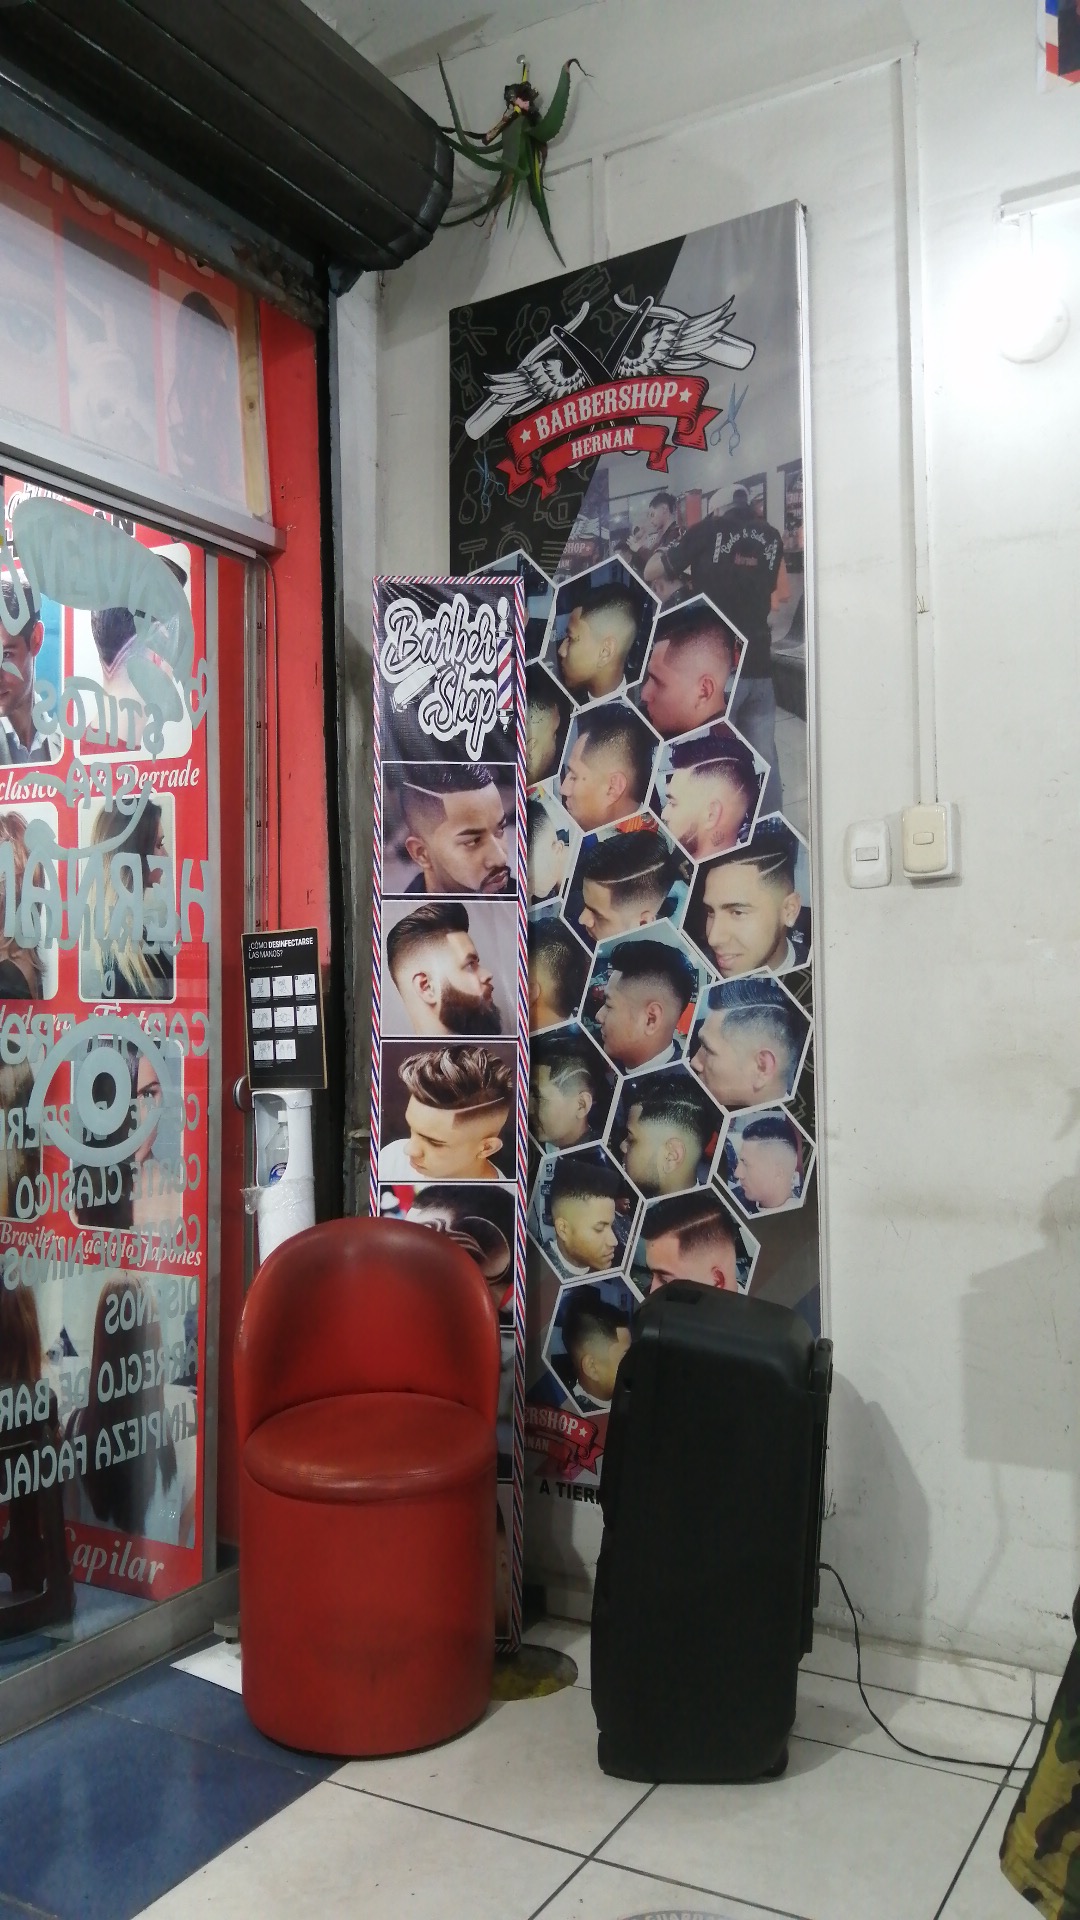 Barber shop Hernan